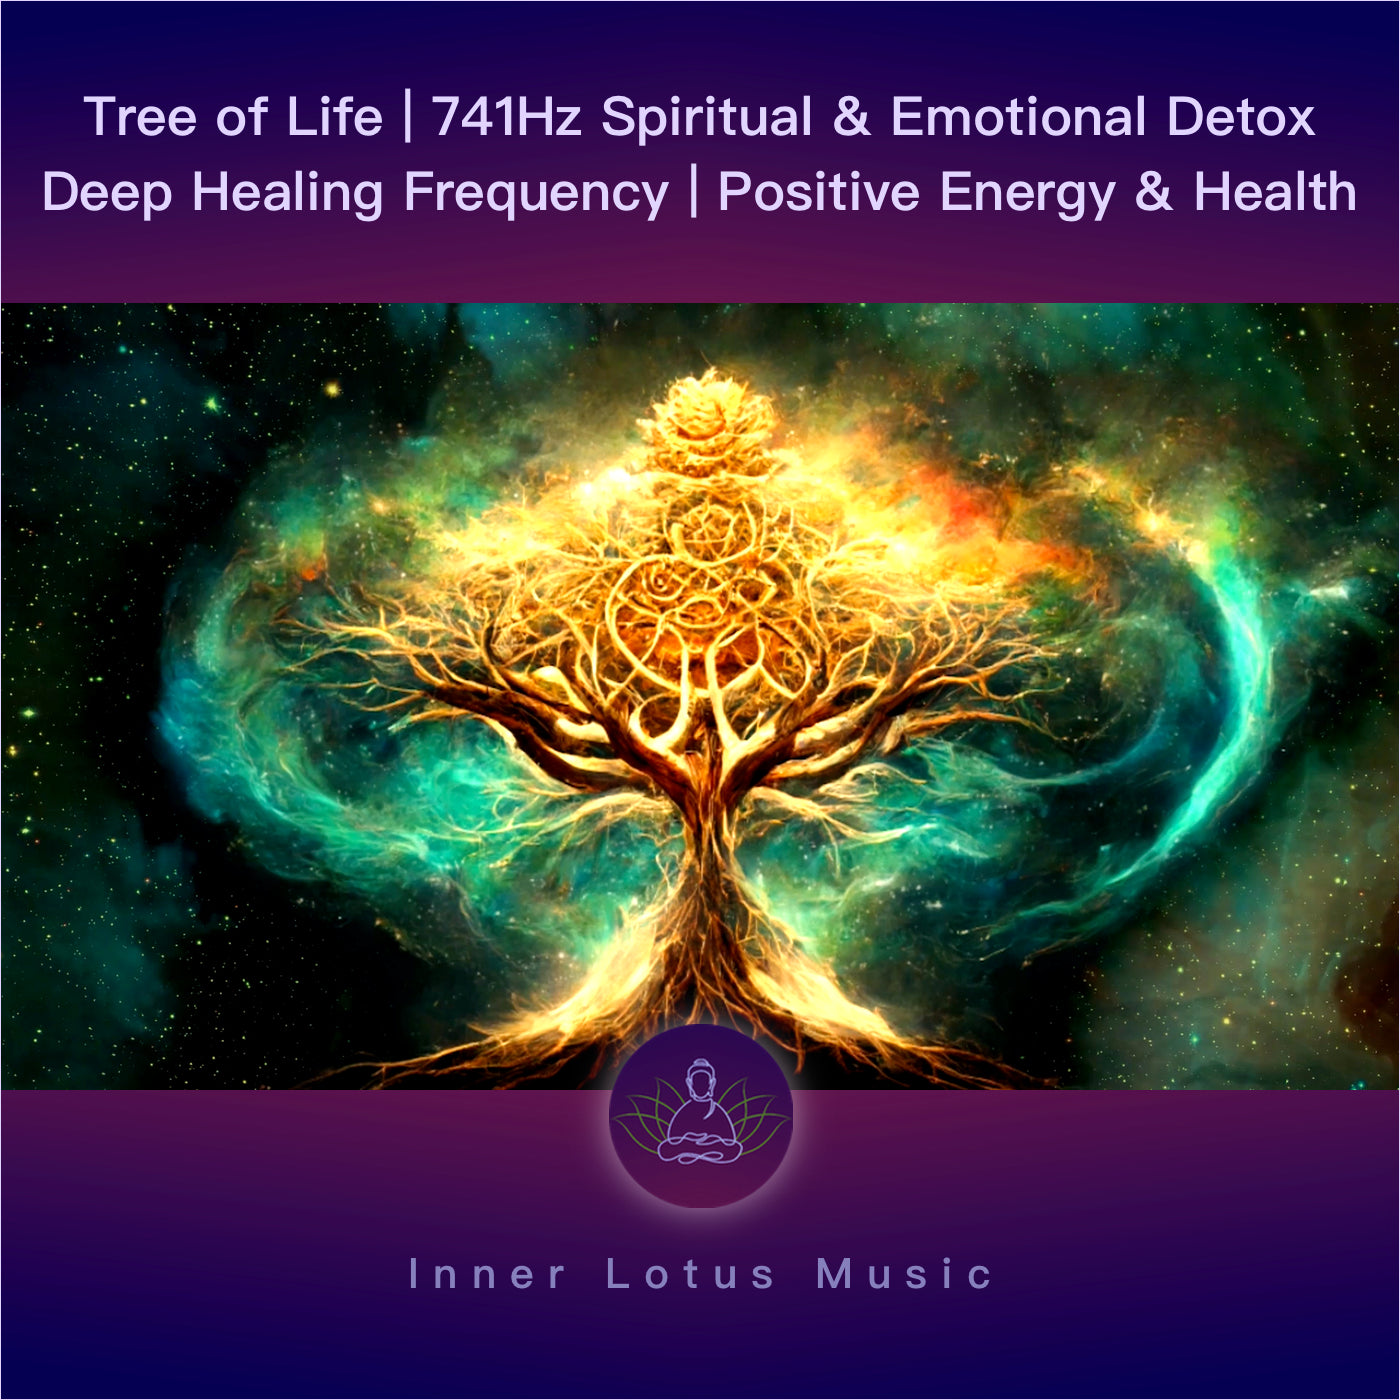 Baum des Lebens | 741Hz Spirituelle & Emotionale Reinigung | Detox Frequenz Musik Meditation, Schlaf